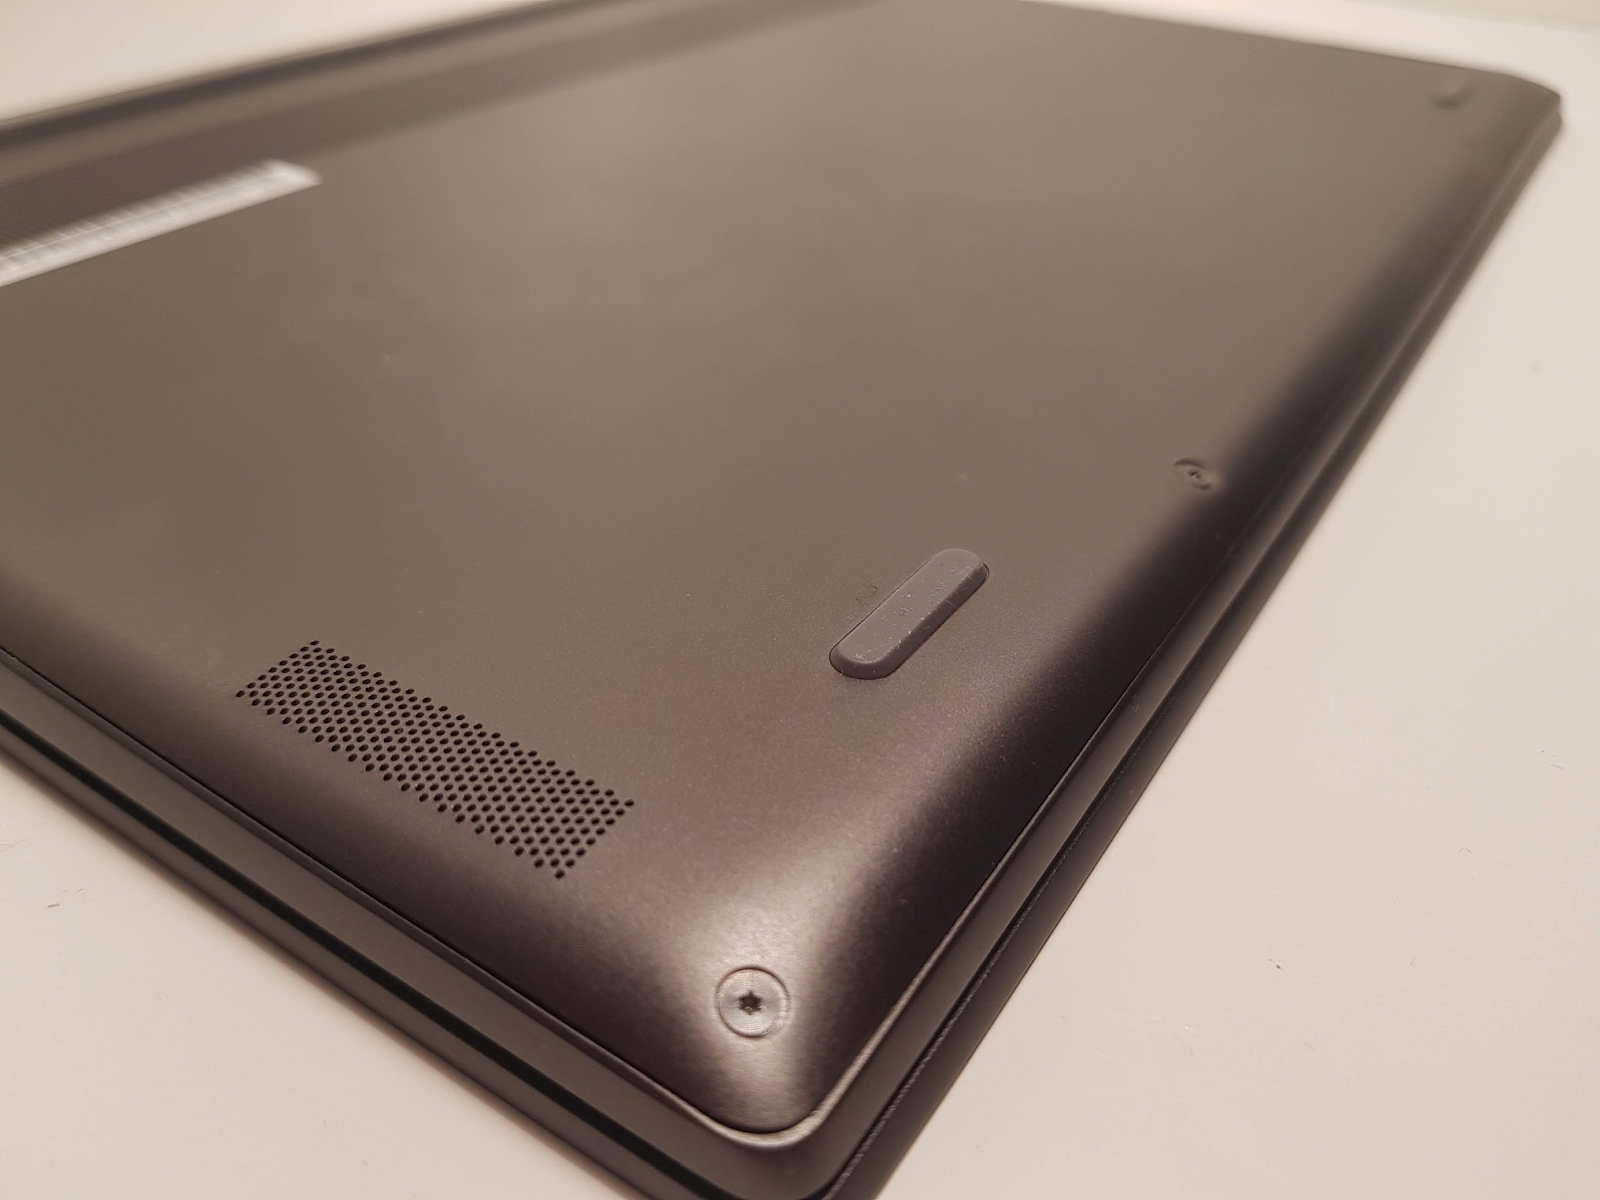 Обзор ноутбука Lenovo S730-13 (2018): мощное железо в стильном алюминиевом корпусе - 9